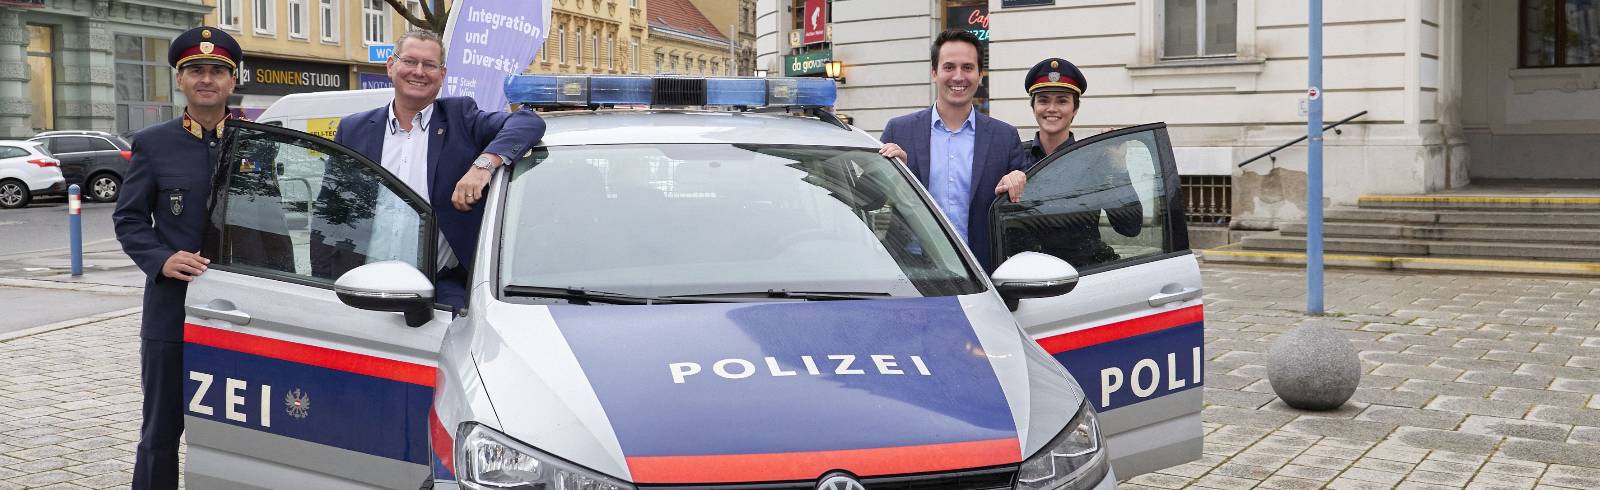 Polizei: Wien sucht gezielt Migrant*innen